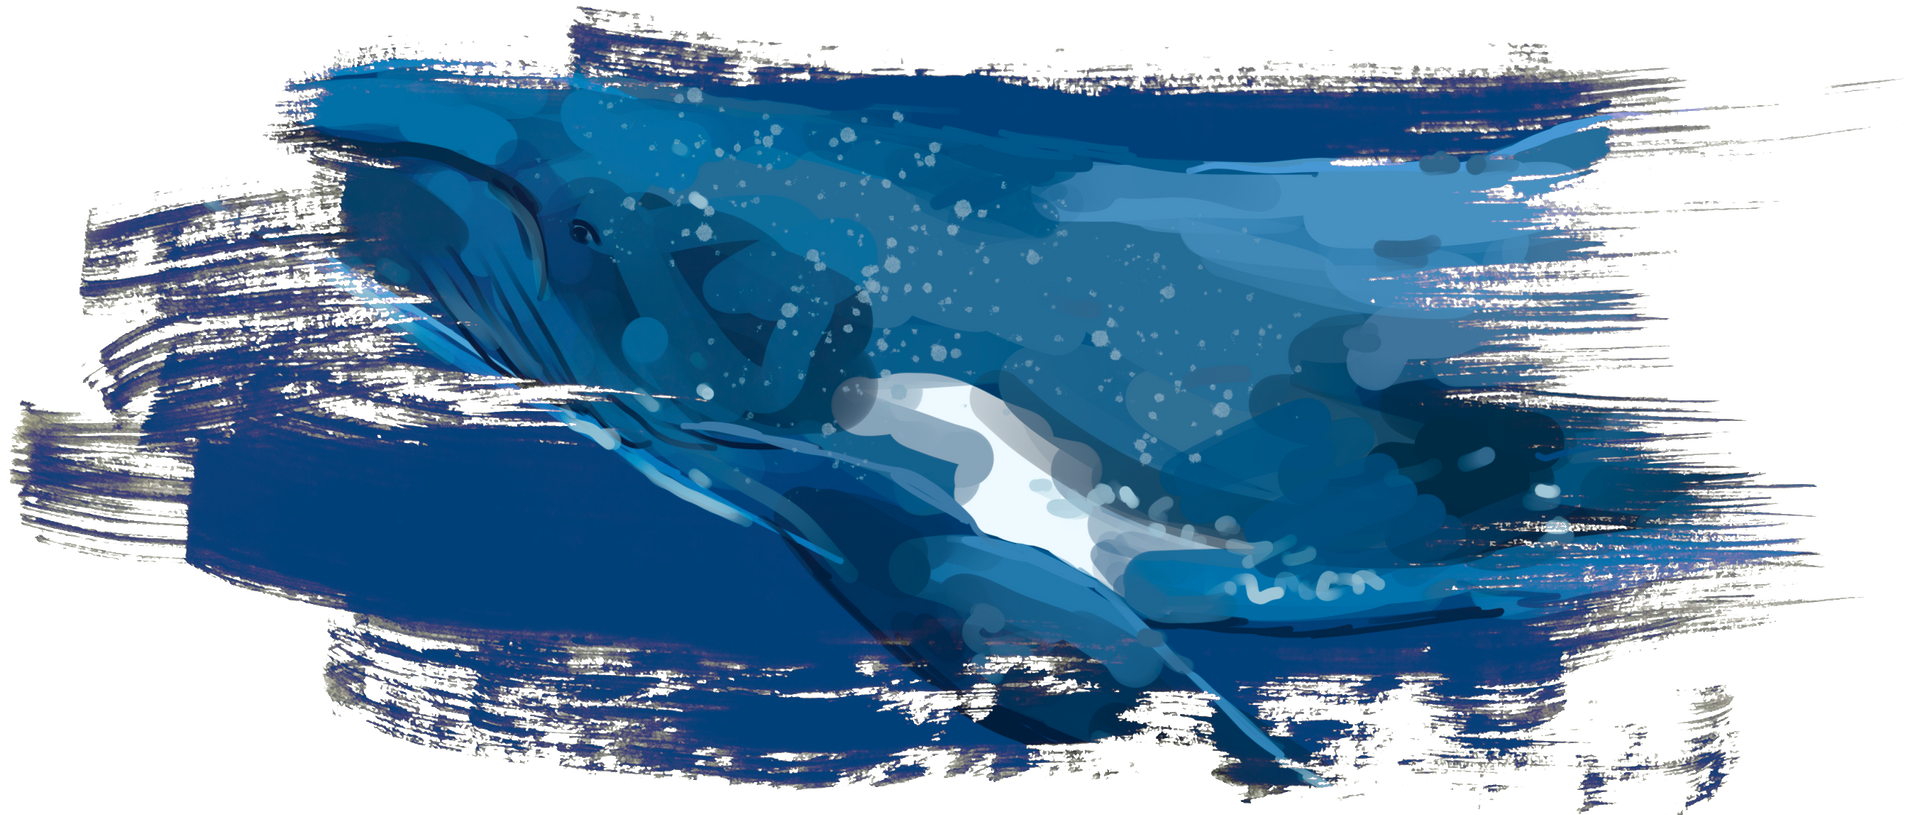 Illustration eines Buckelwals